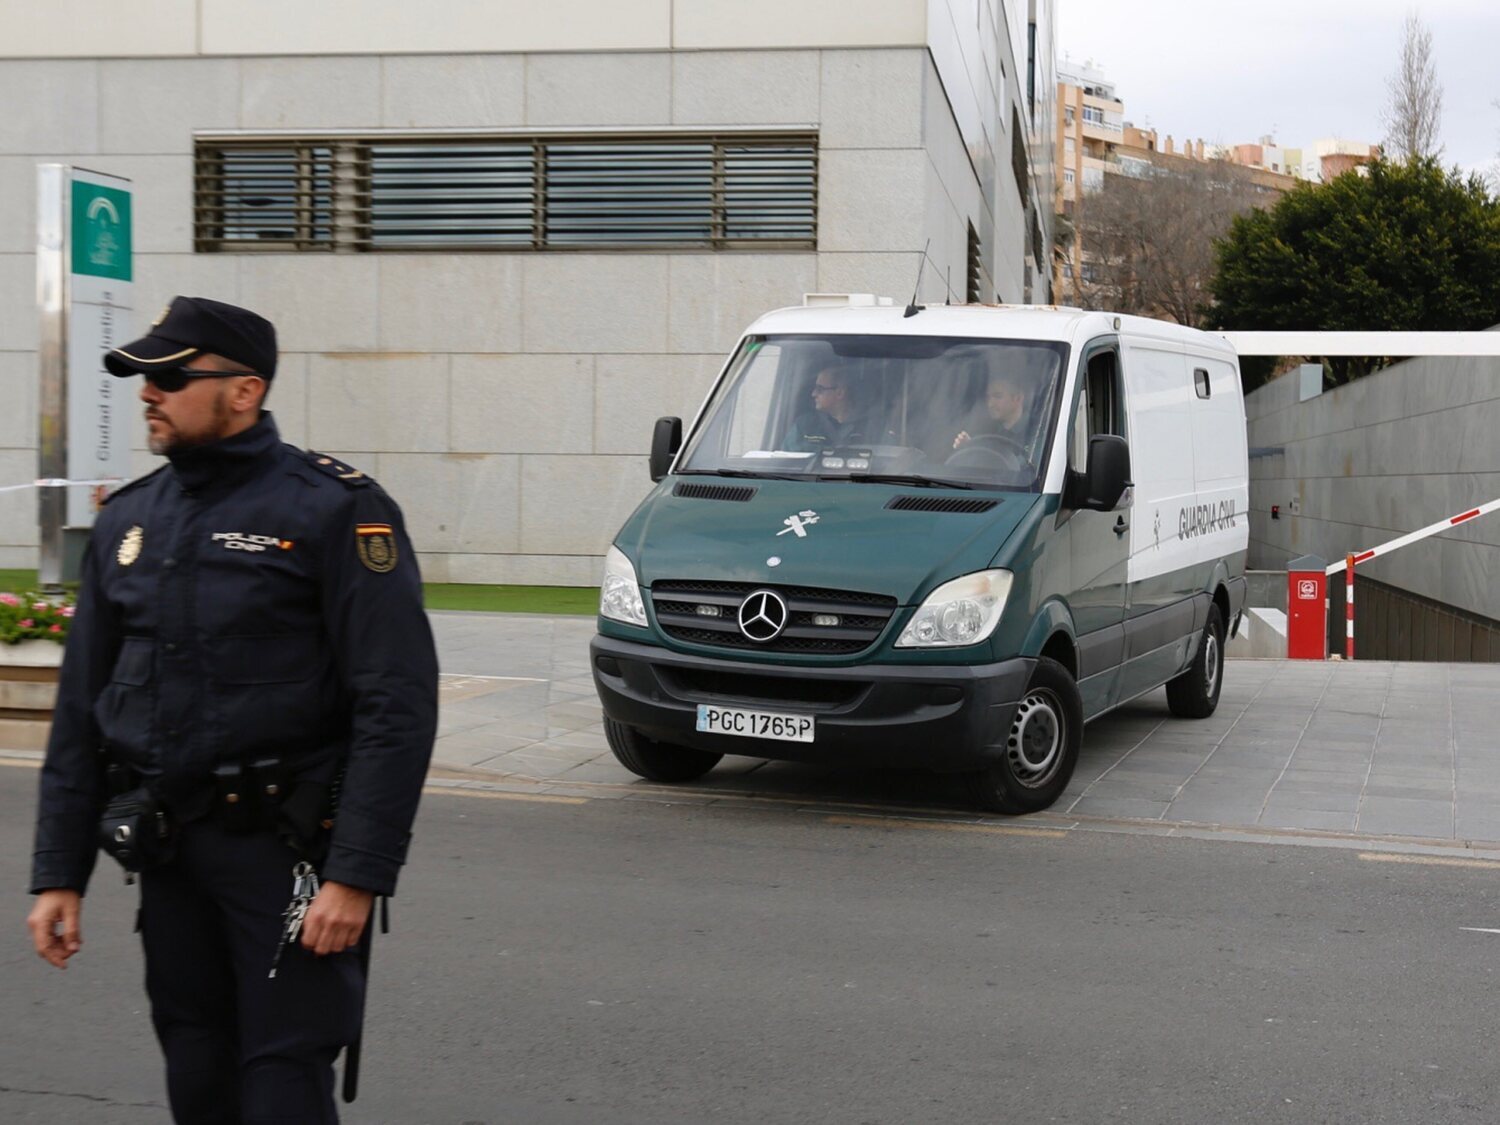 La Guardia Civil investiga una violación grupal a una turista en Almería